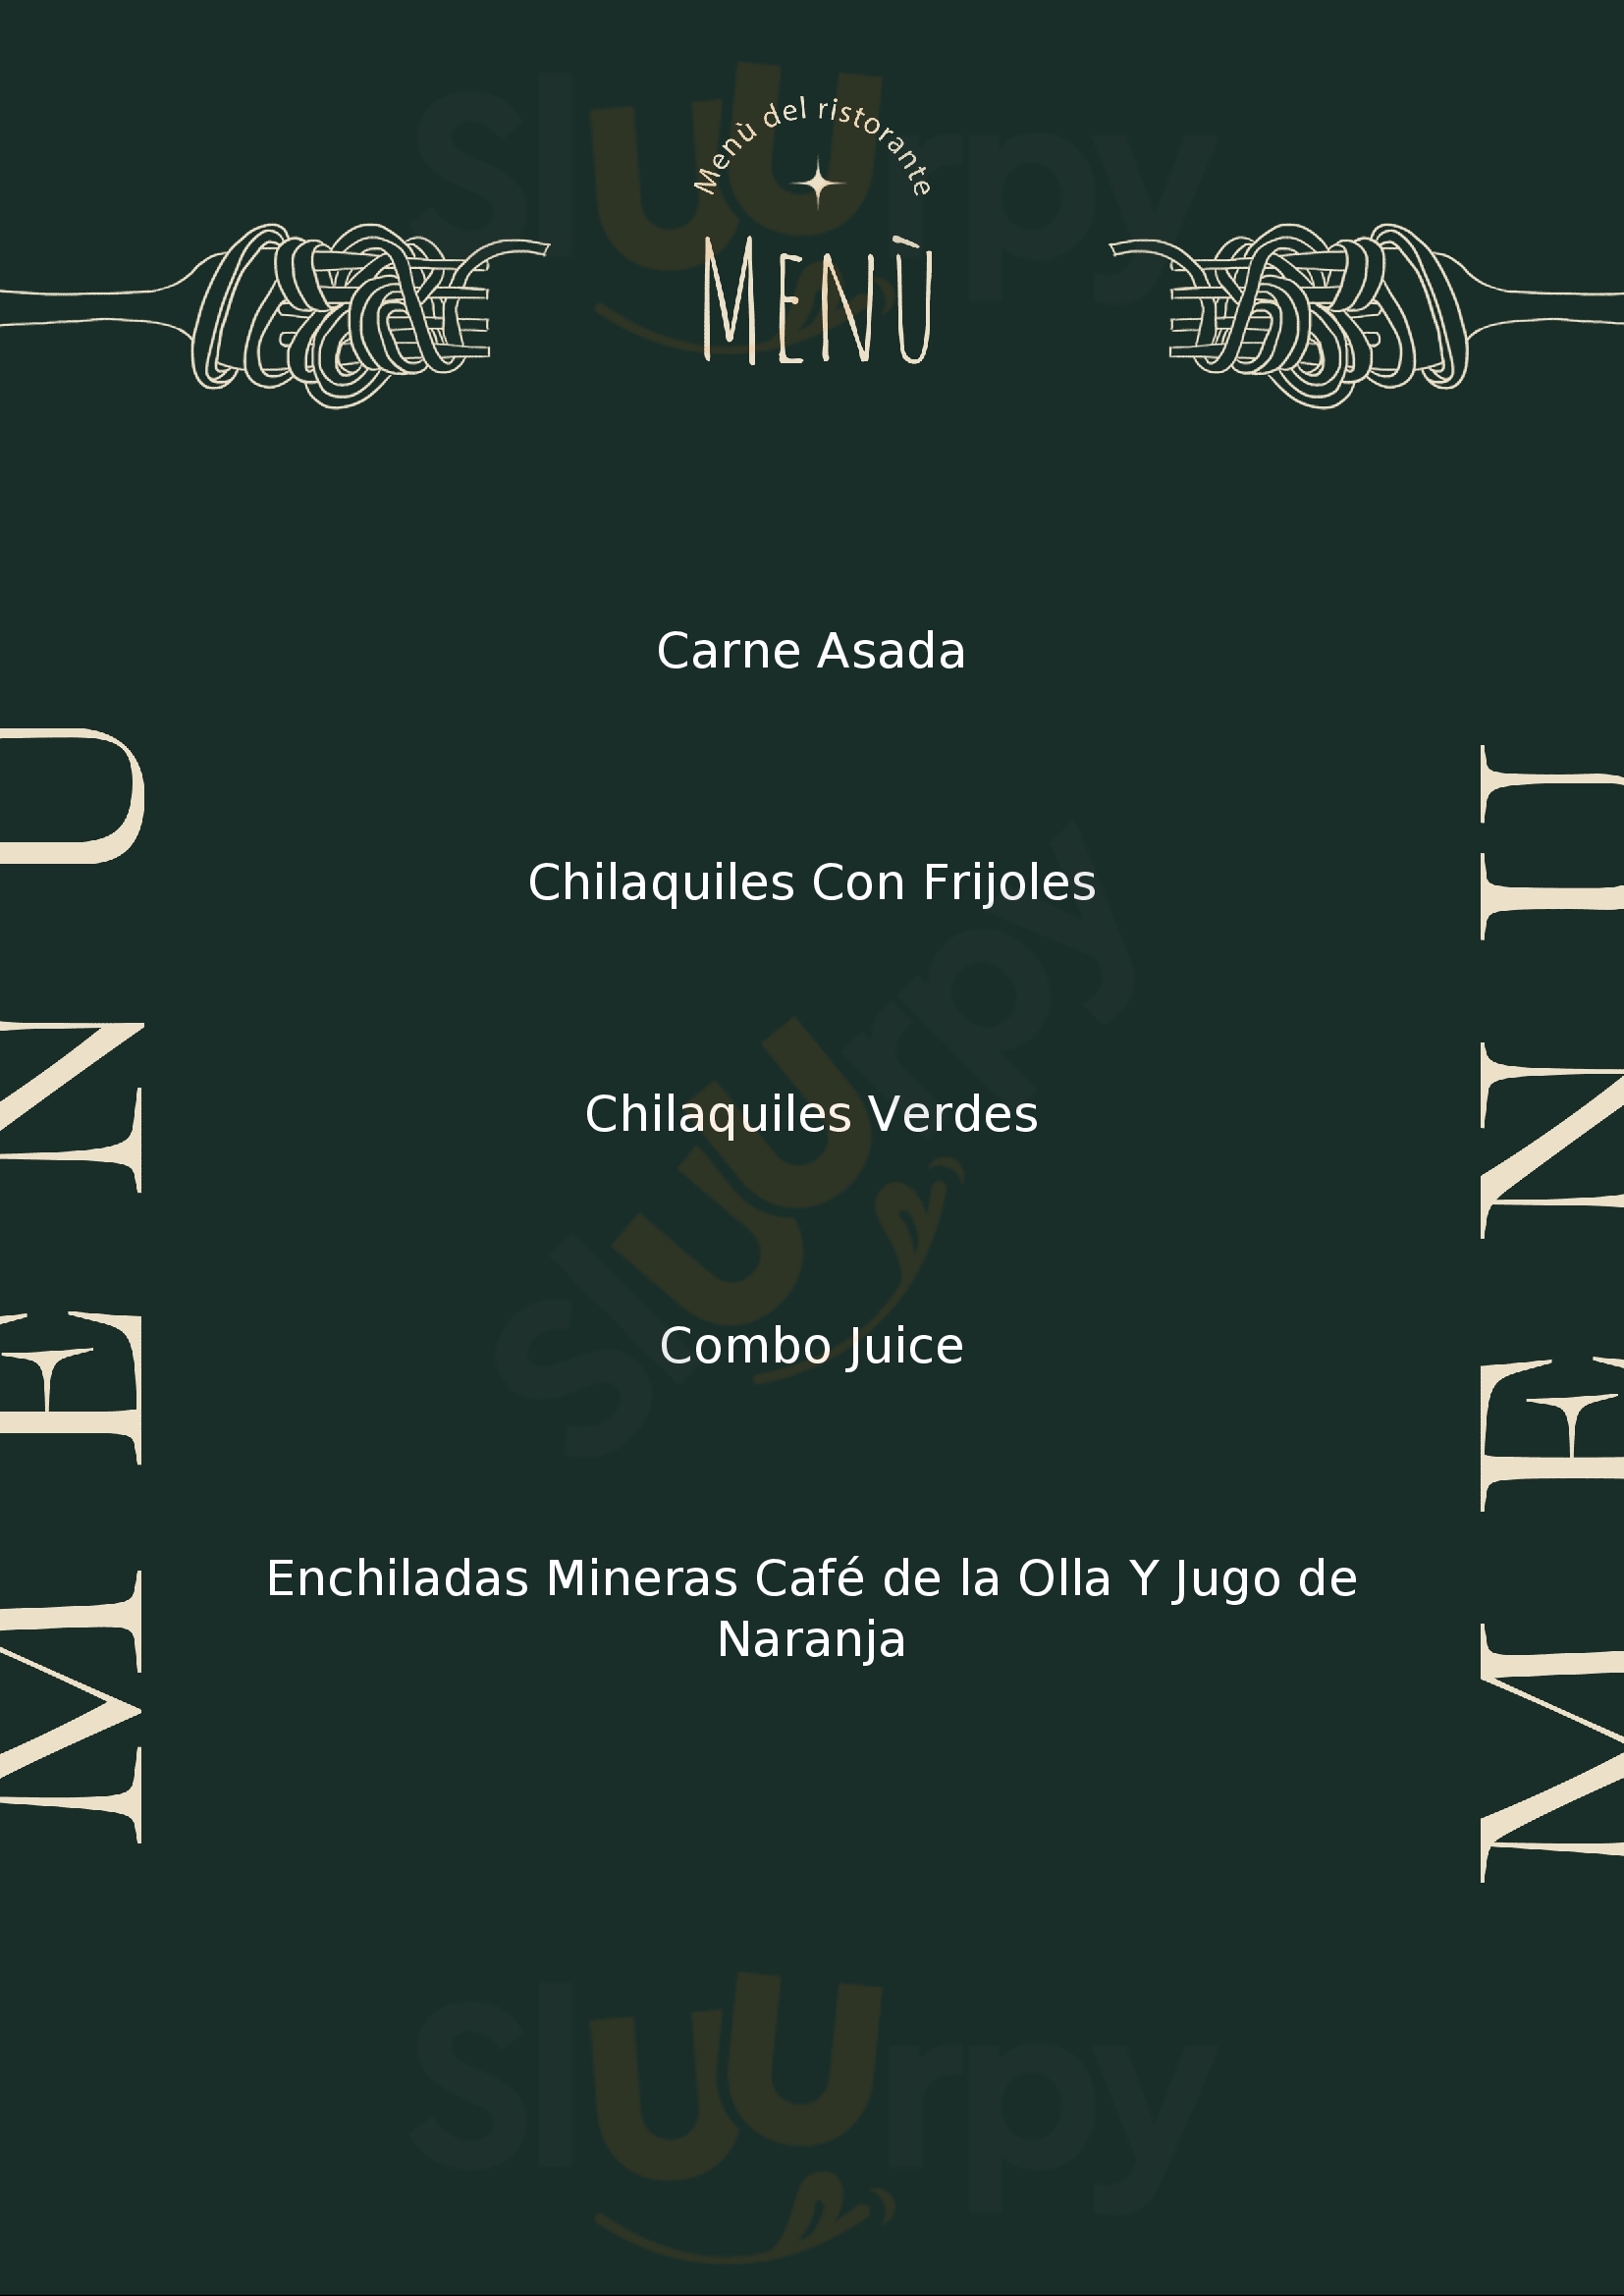 Los Olivos Restaurante Guanajuato Menu - 1